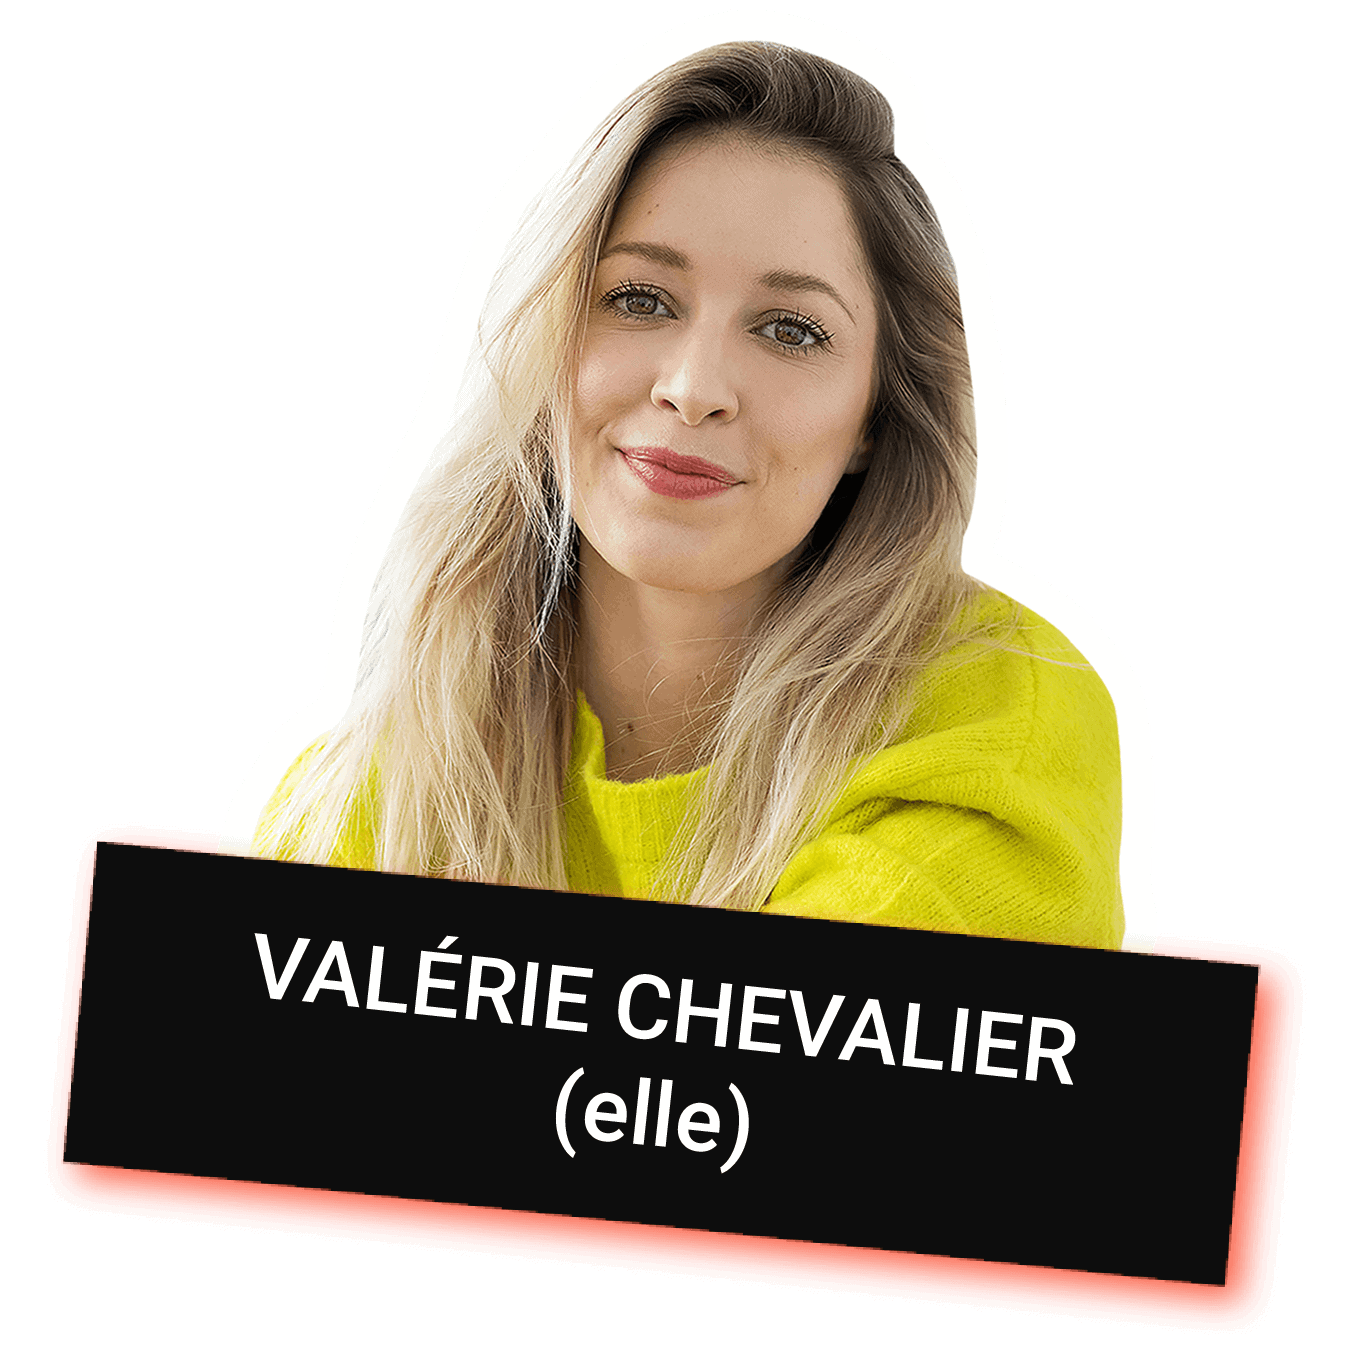 Valérie Chevalier avec pronom